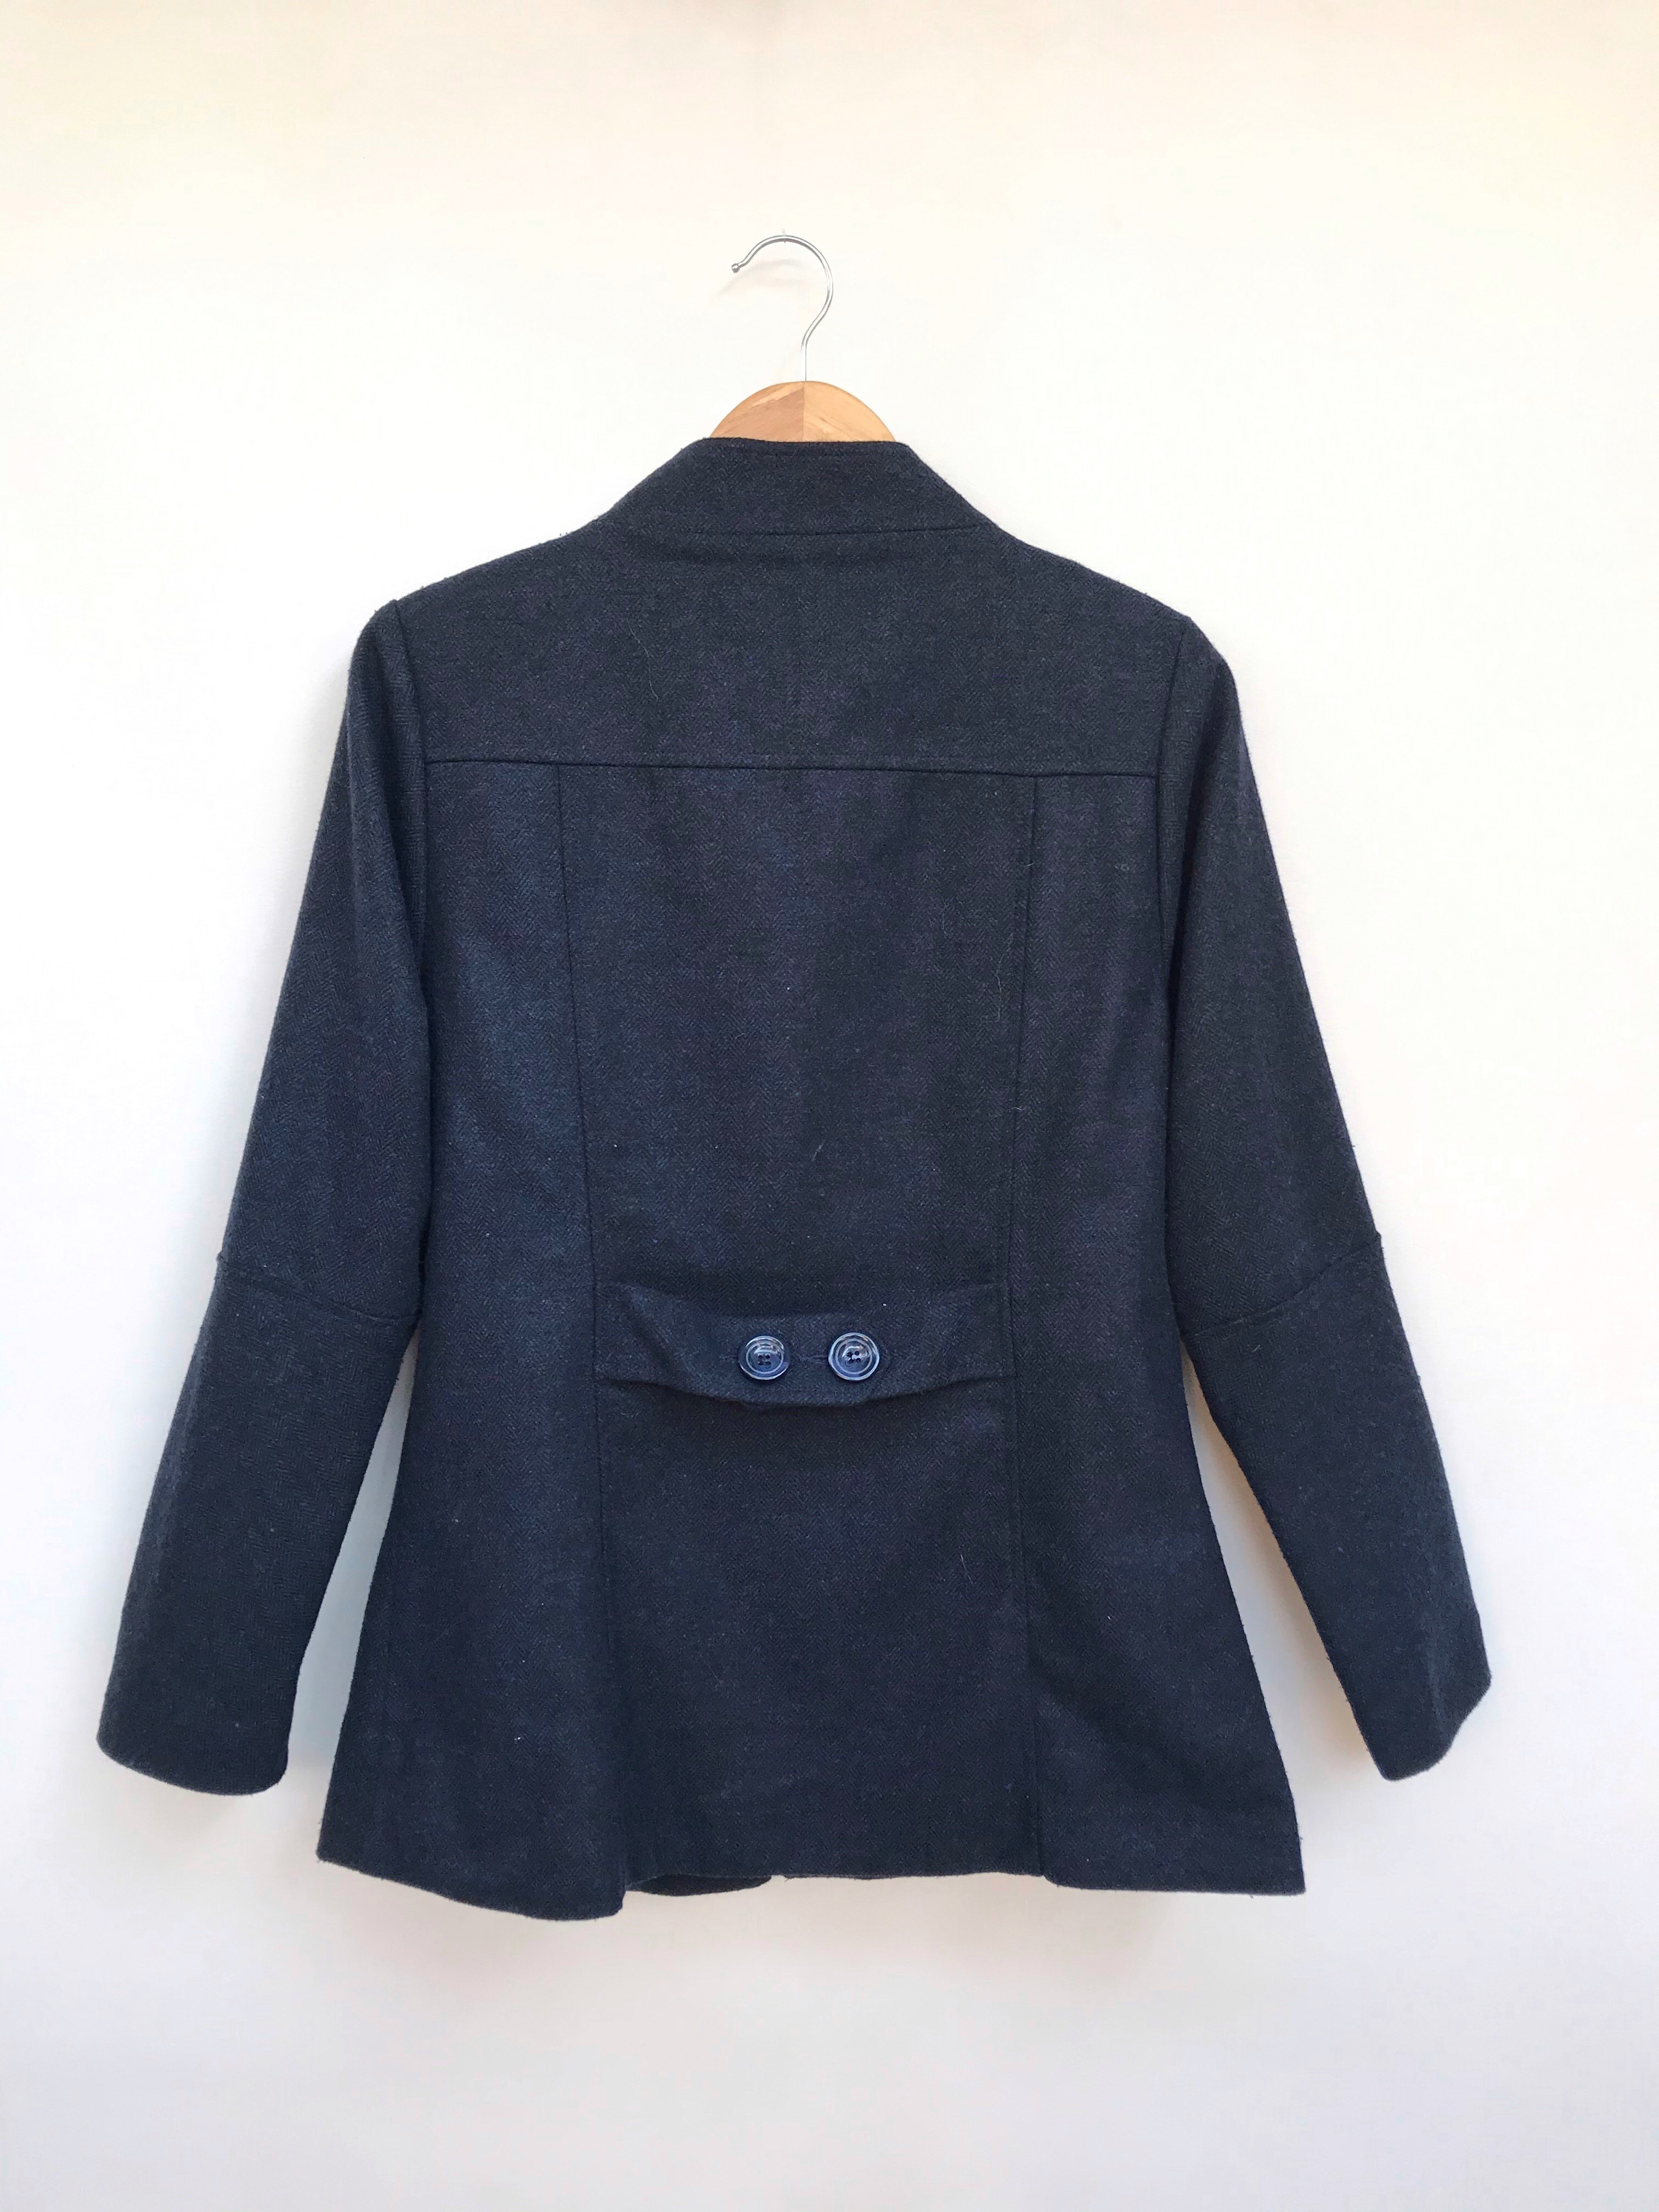 Abrigo Malabar azul tipo paño, forrado, bolsillos laterales y botones estilo cacho de toro negros. Precio original S/ 170
Talla M